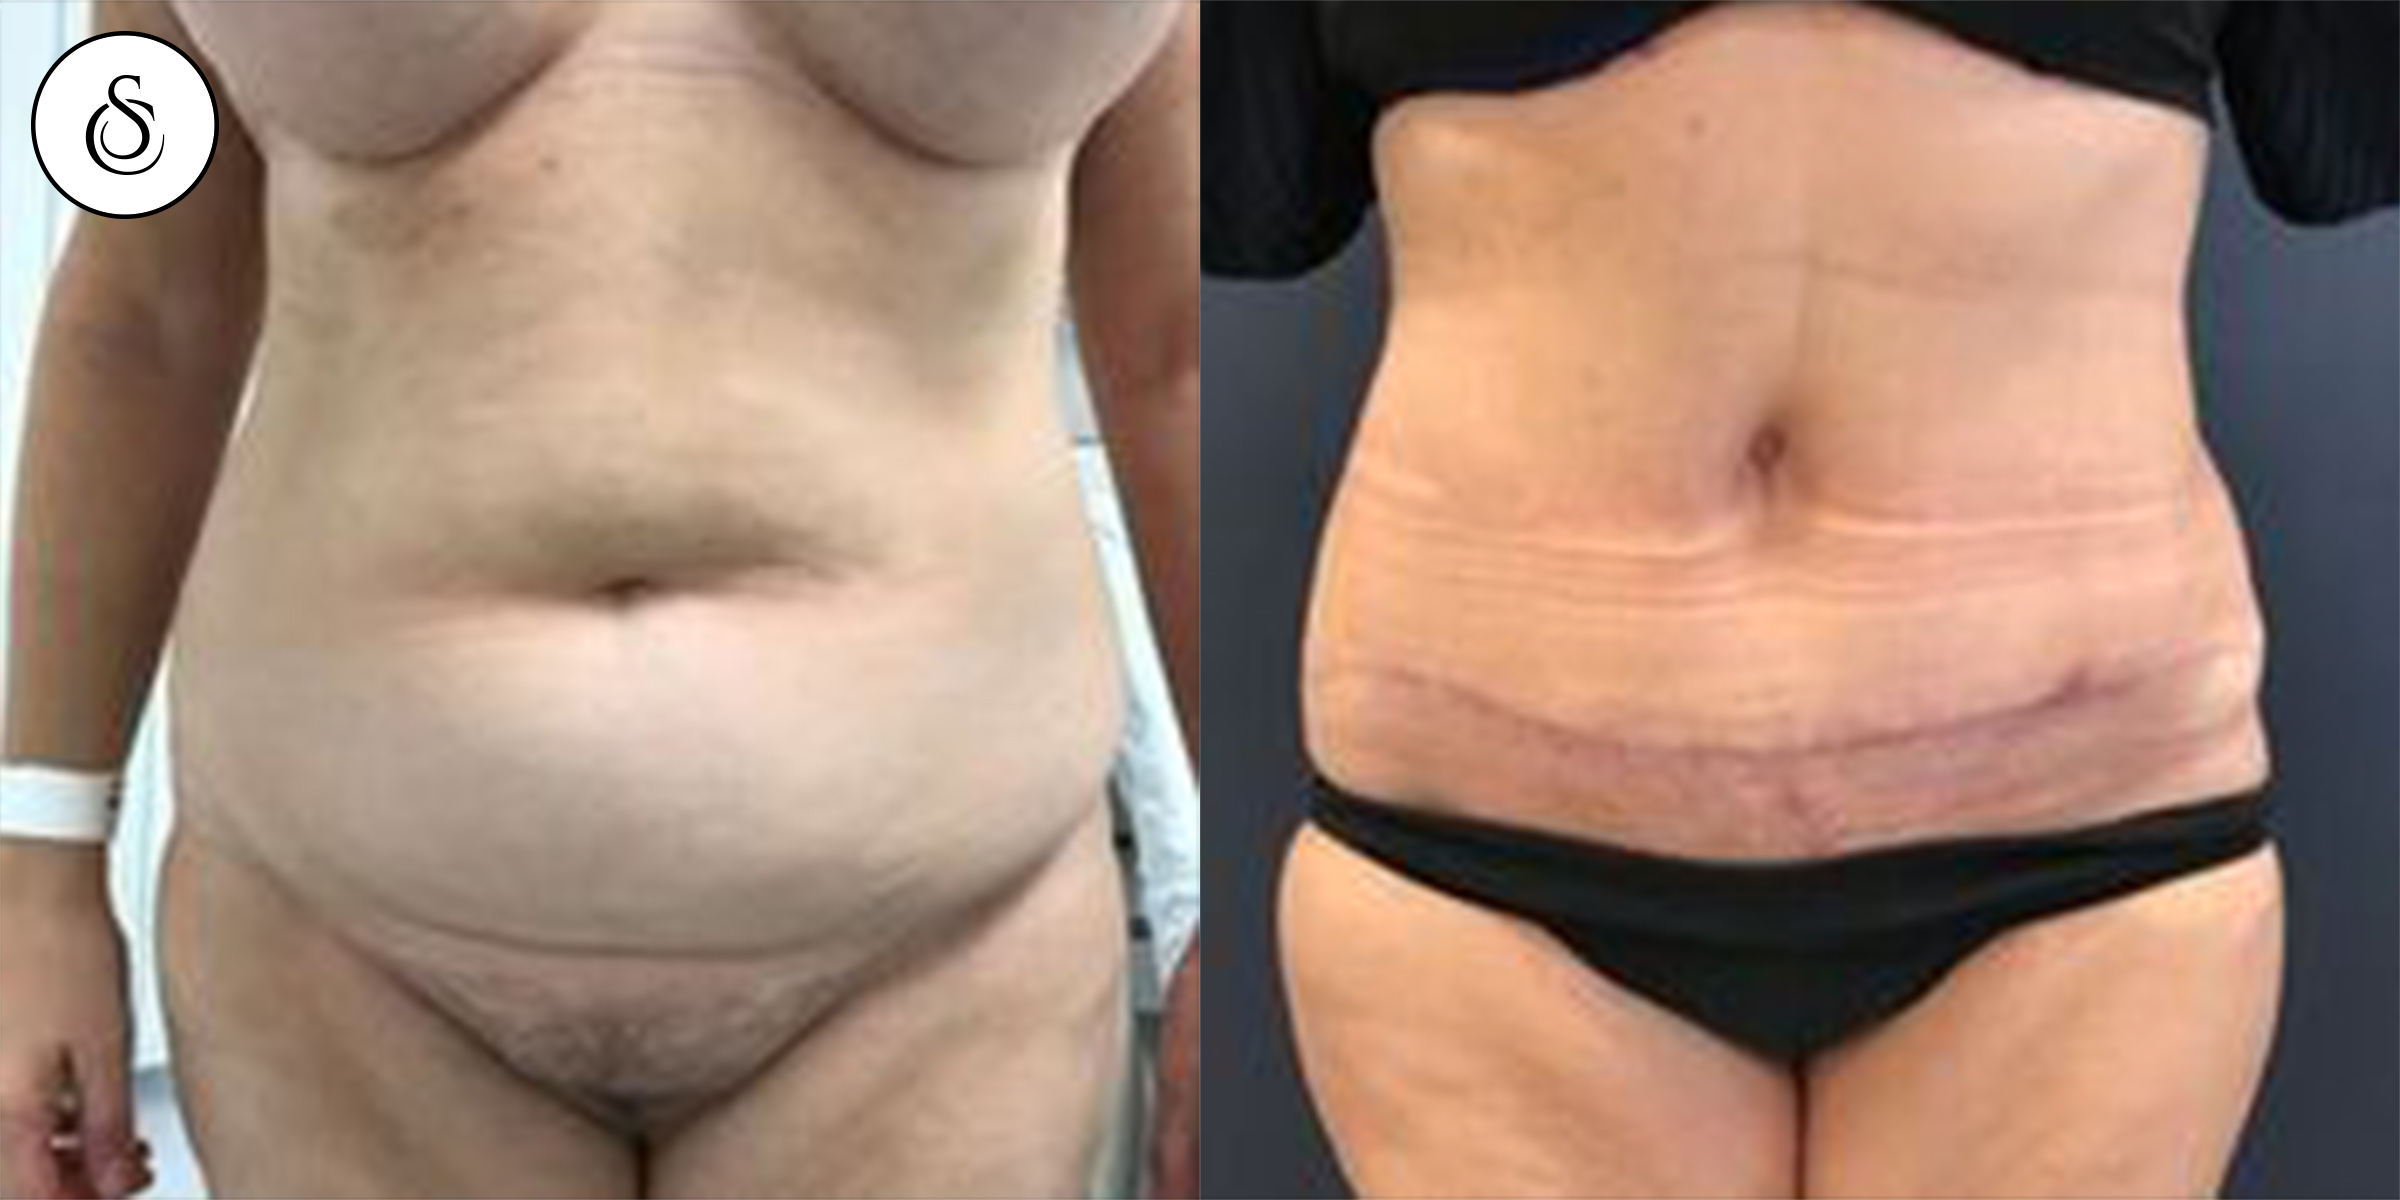 plastie abdominale petite liposuccion femme avant et après